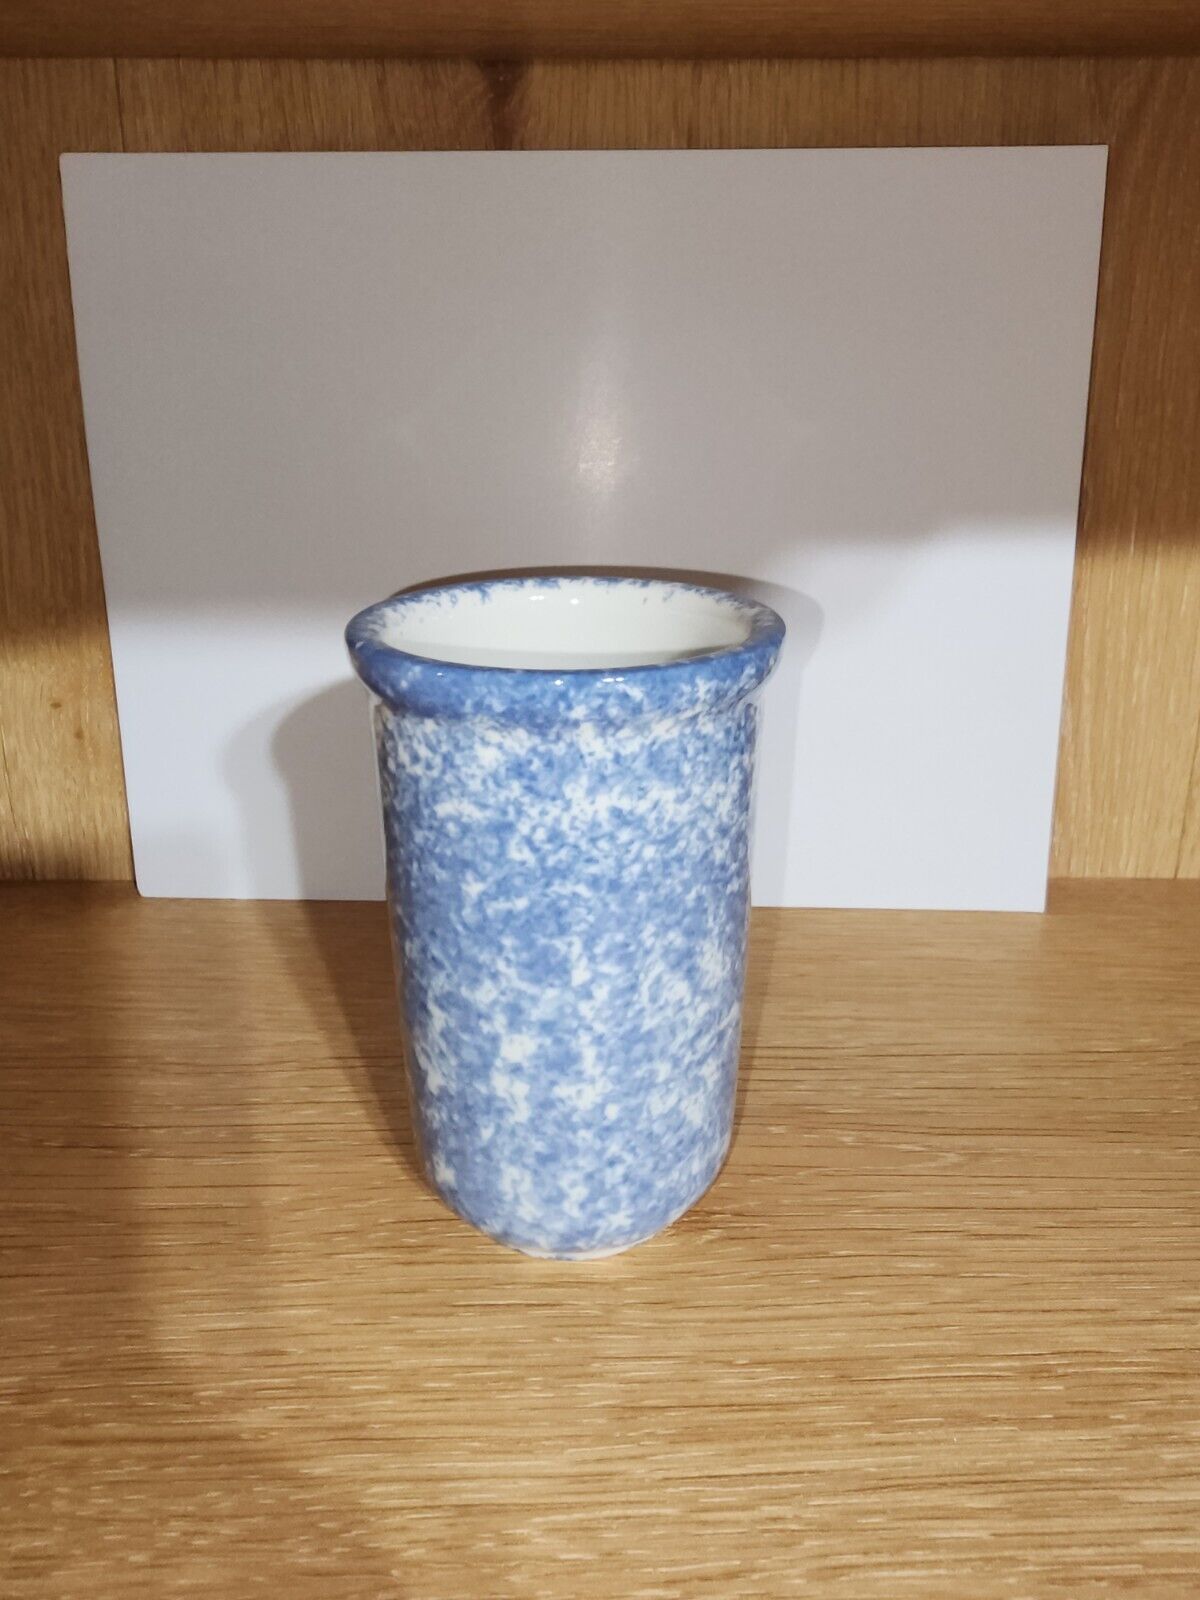 Liz Claiborne Hand Painted Blue Porcelain Cup / Mug